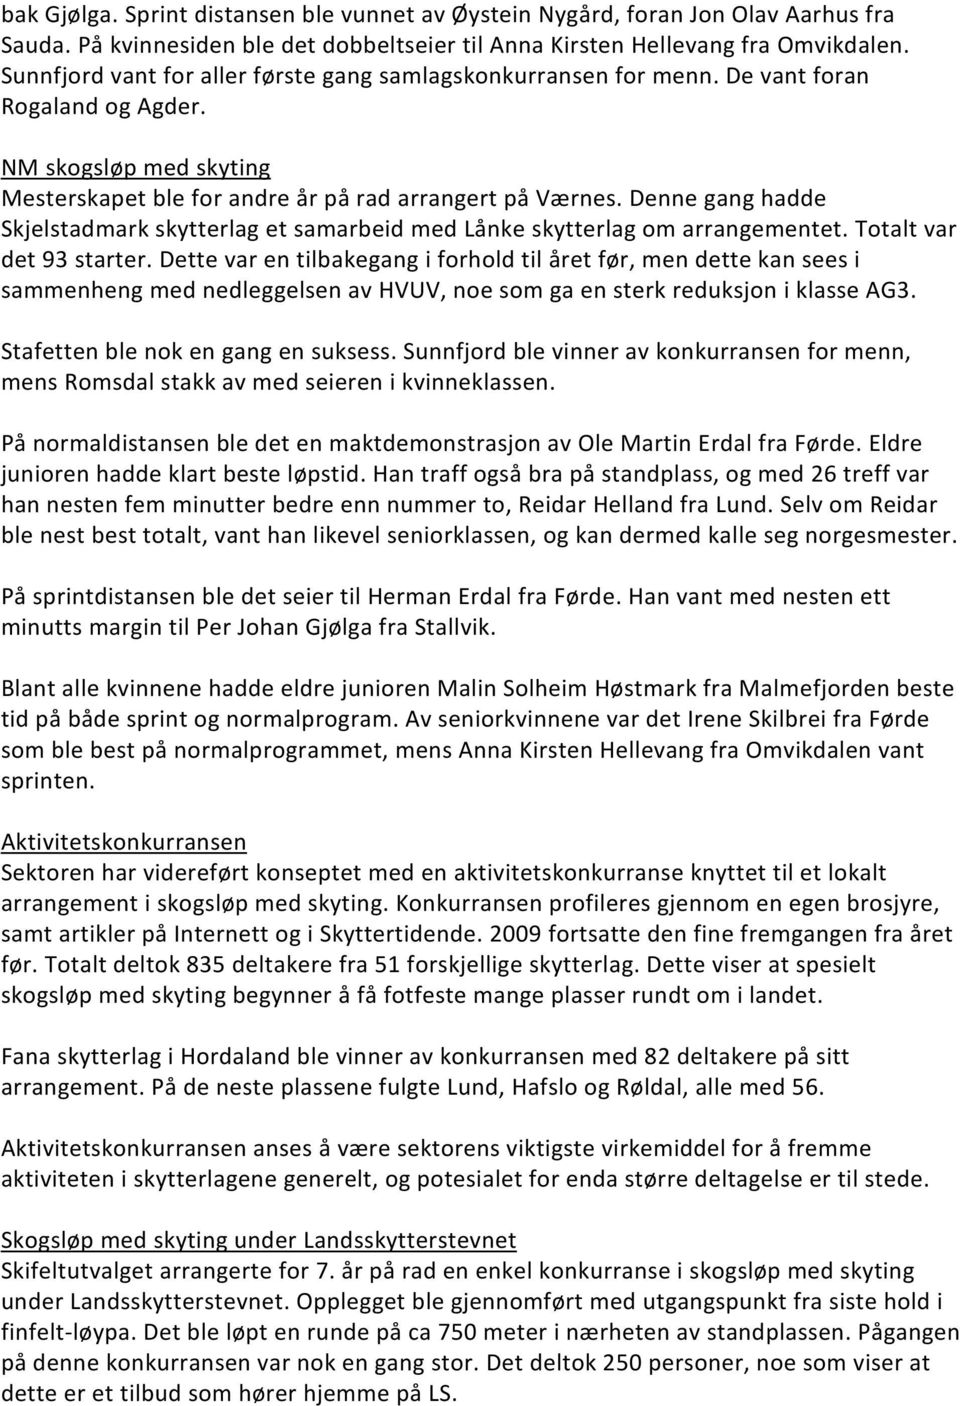 Denne gang hadde Skjelstadmark skytterlag et samarbeid med Lånke skytterlag om arrangementet. Totalt var det 93 starter.